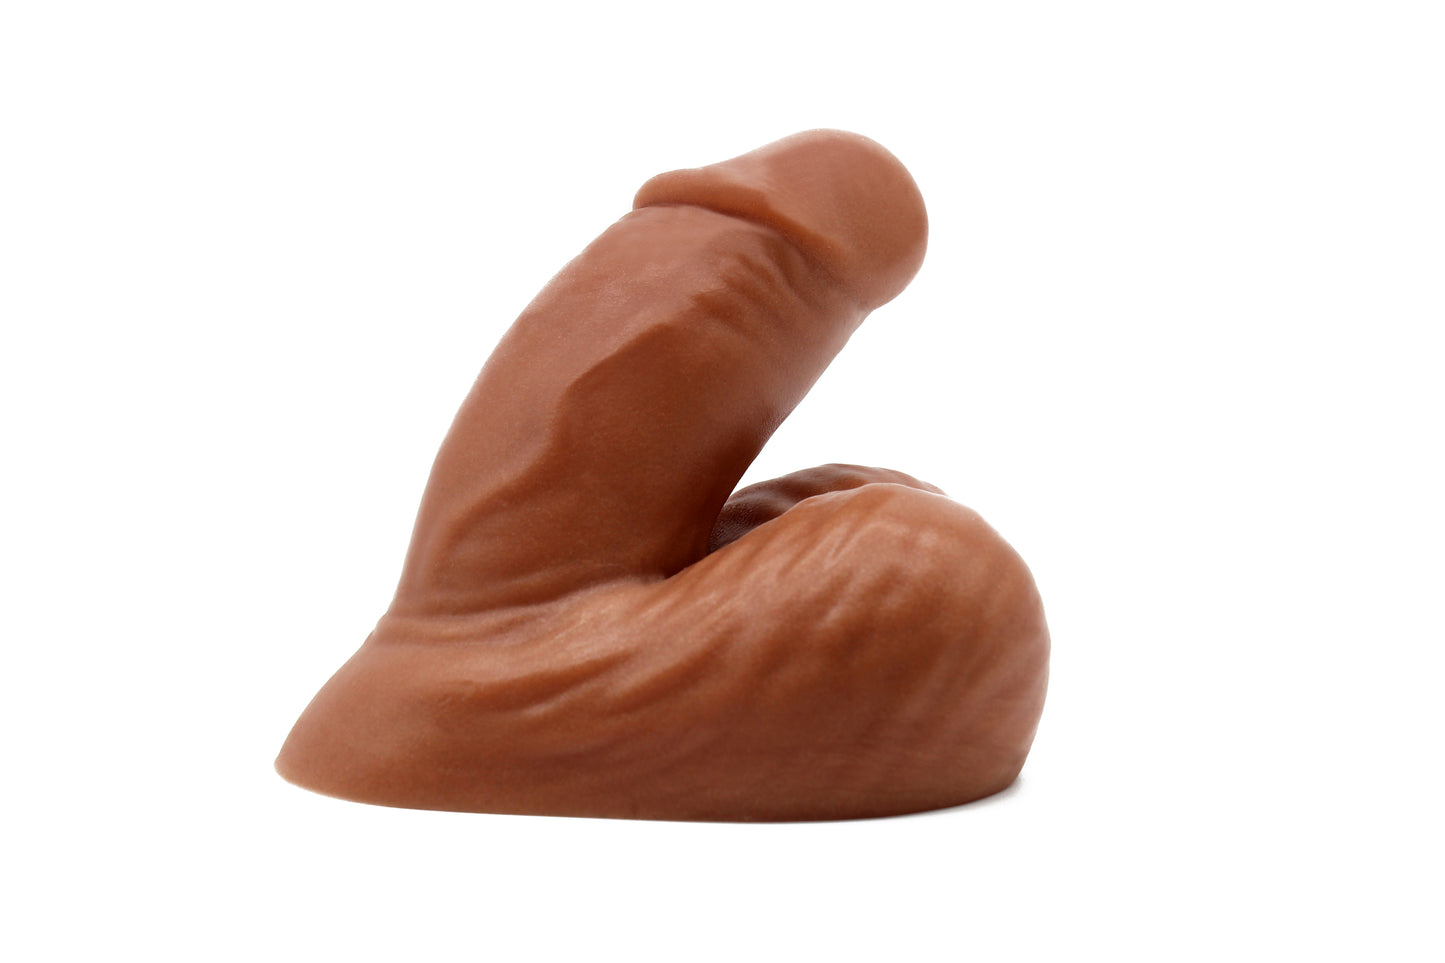 The Esse Packer - Circumcised Variant